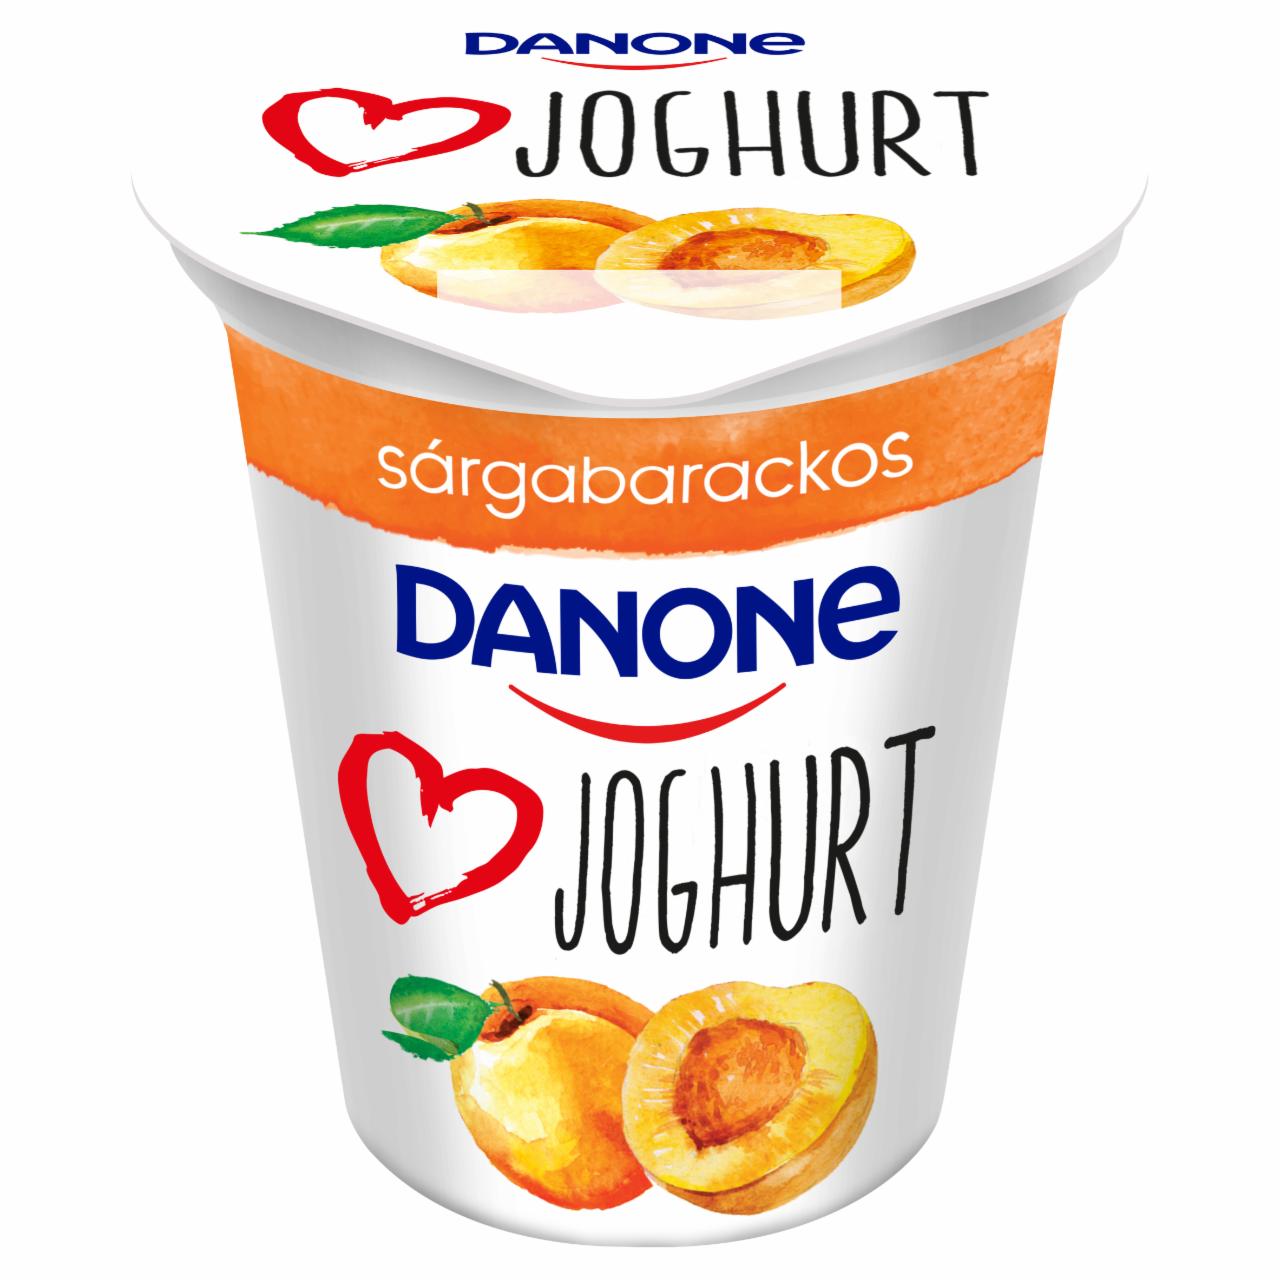 Képek - Danone sárgabarackos joghurt 140 g